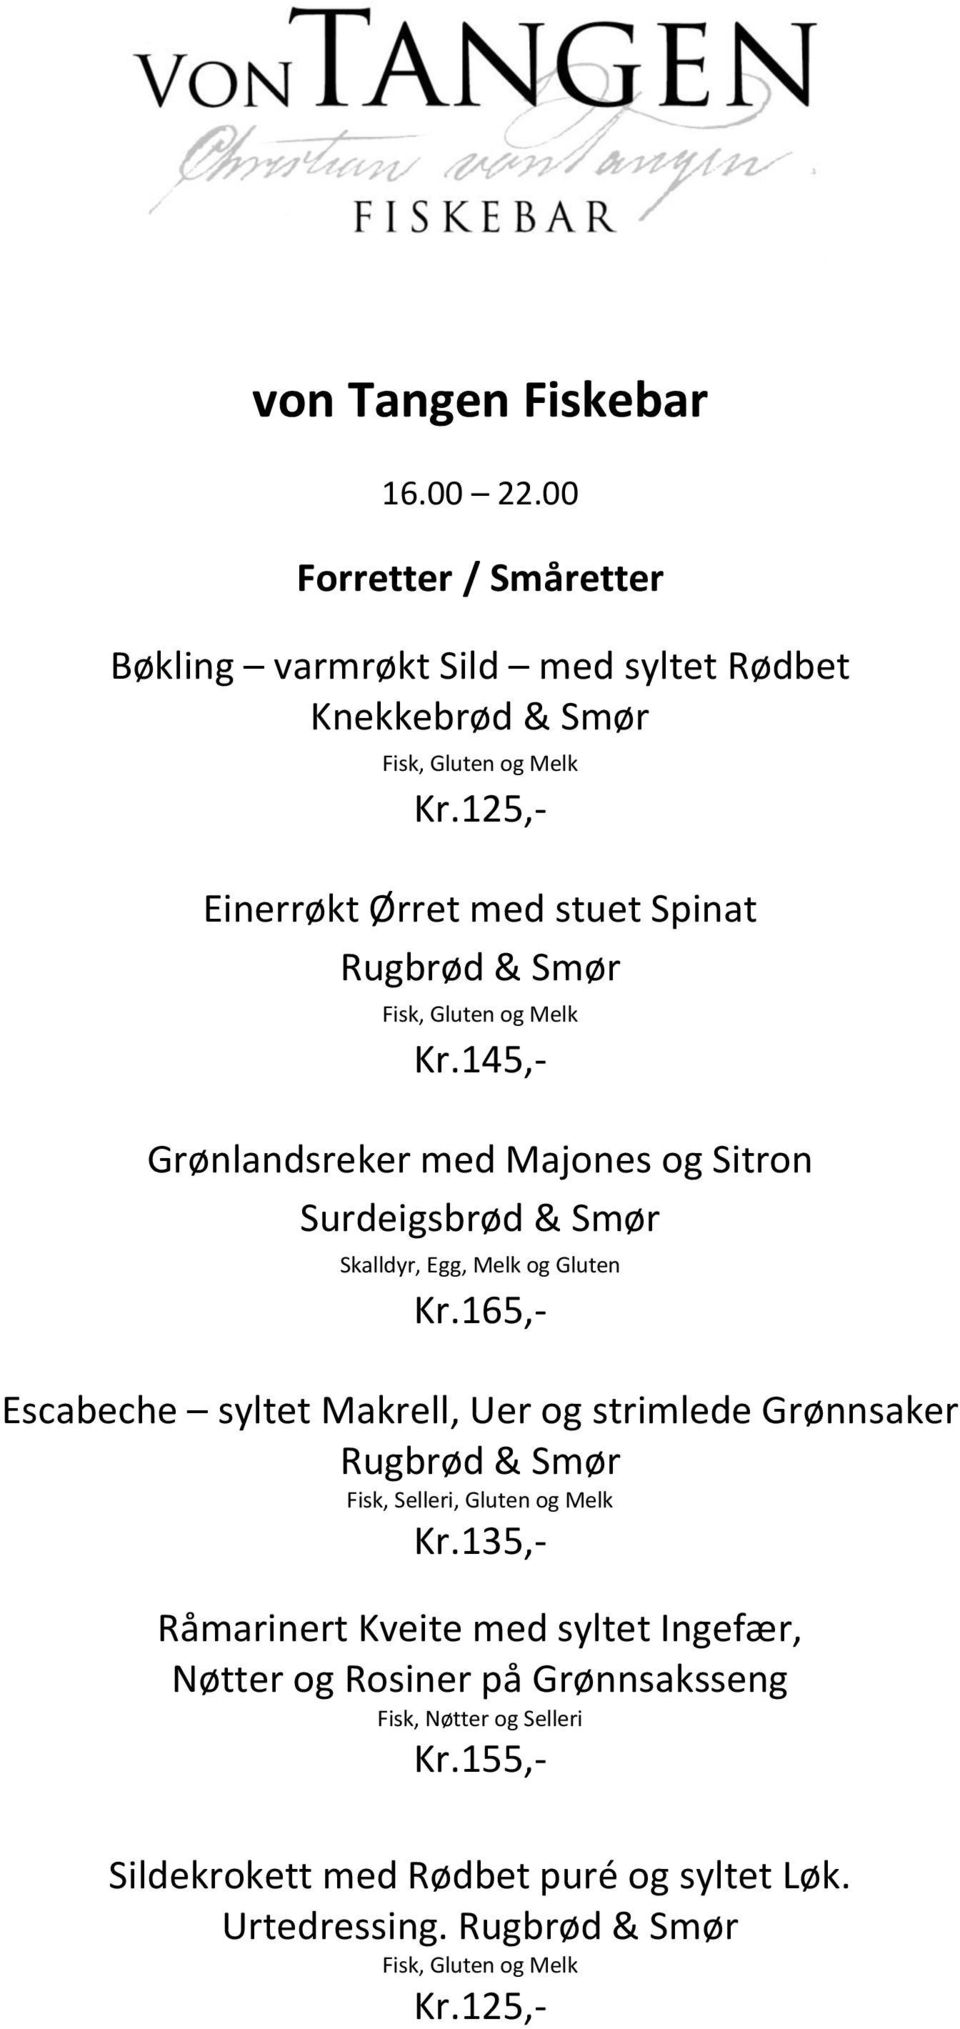 Grønlandsreker med Majones og Sitron Surdeigsbrød & Smør Skalldyr, Egg, Melk og Gluten Kr.